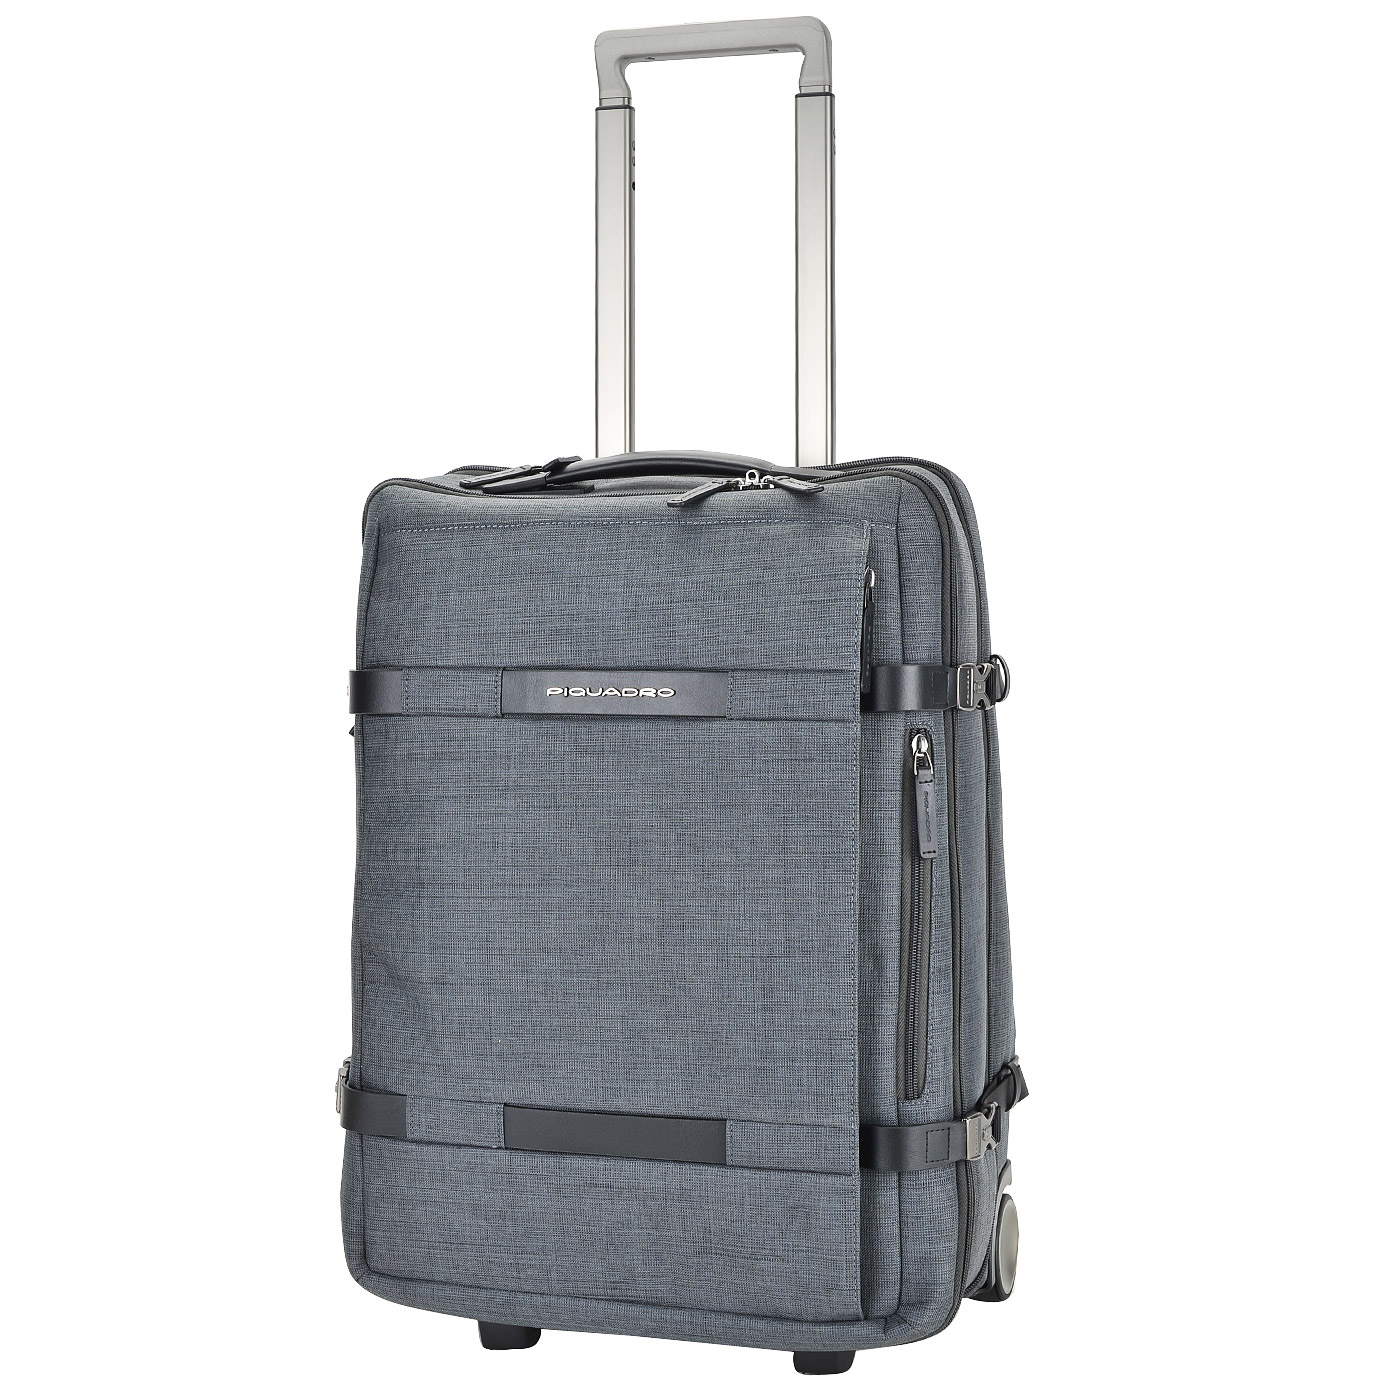 Серый текстильный чемодан с отделением под ноутбук на колесах Piquadro